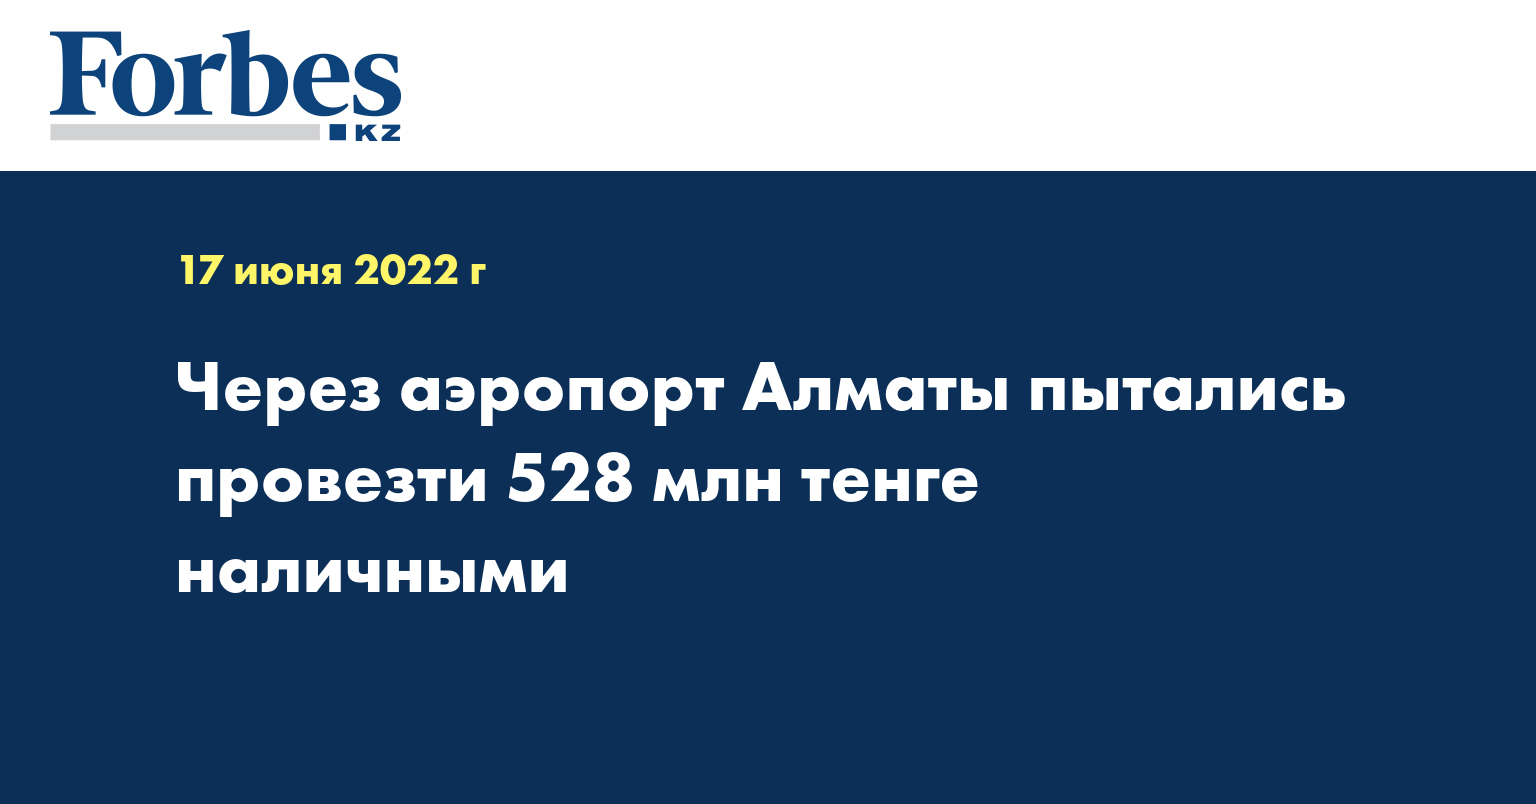 Через аэропорт Алматы пытались провезти 528 млн тенге наличными